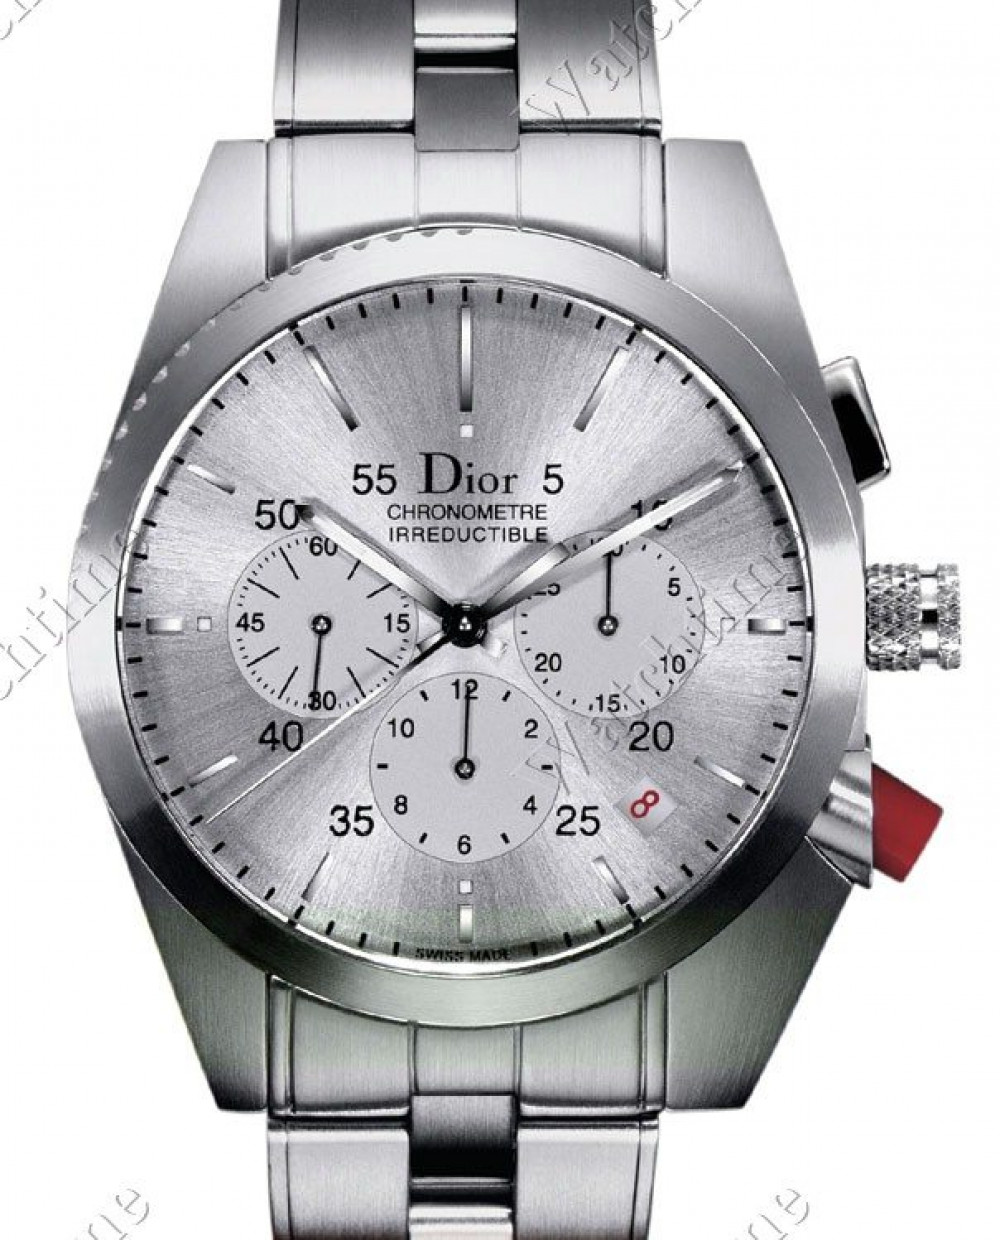 Zegarek firmy Dior, model Chiffre Rouge 101